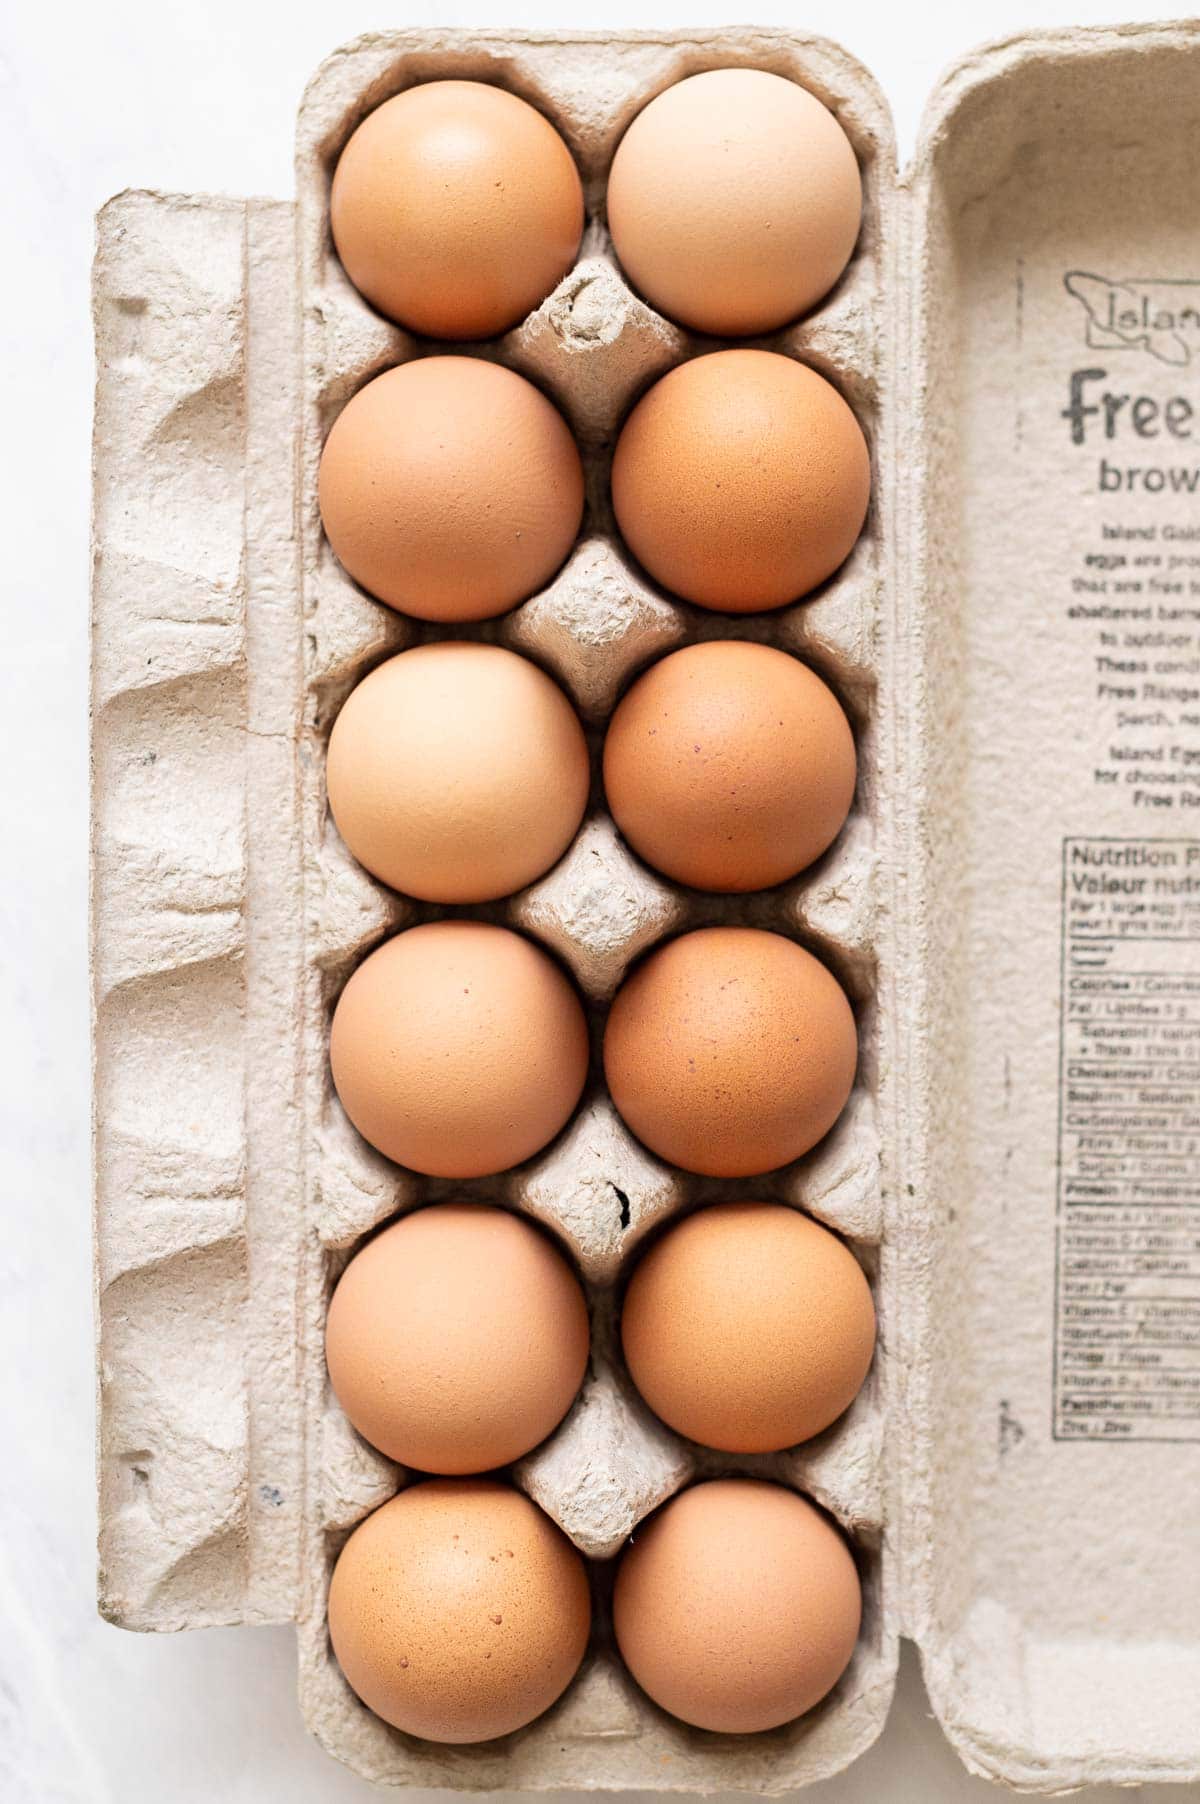 A dozen of brown eggs in a carton.